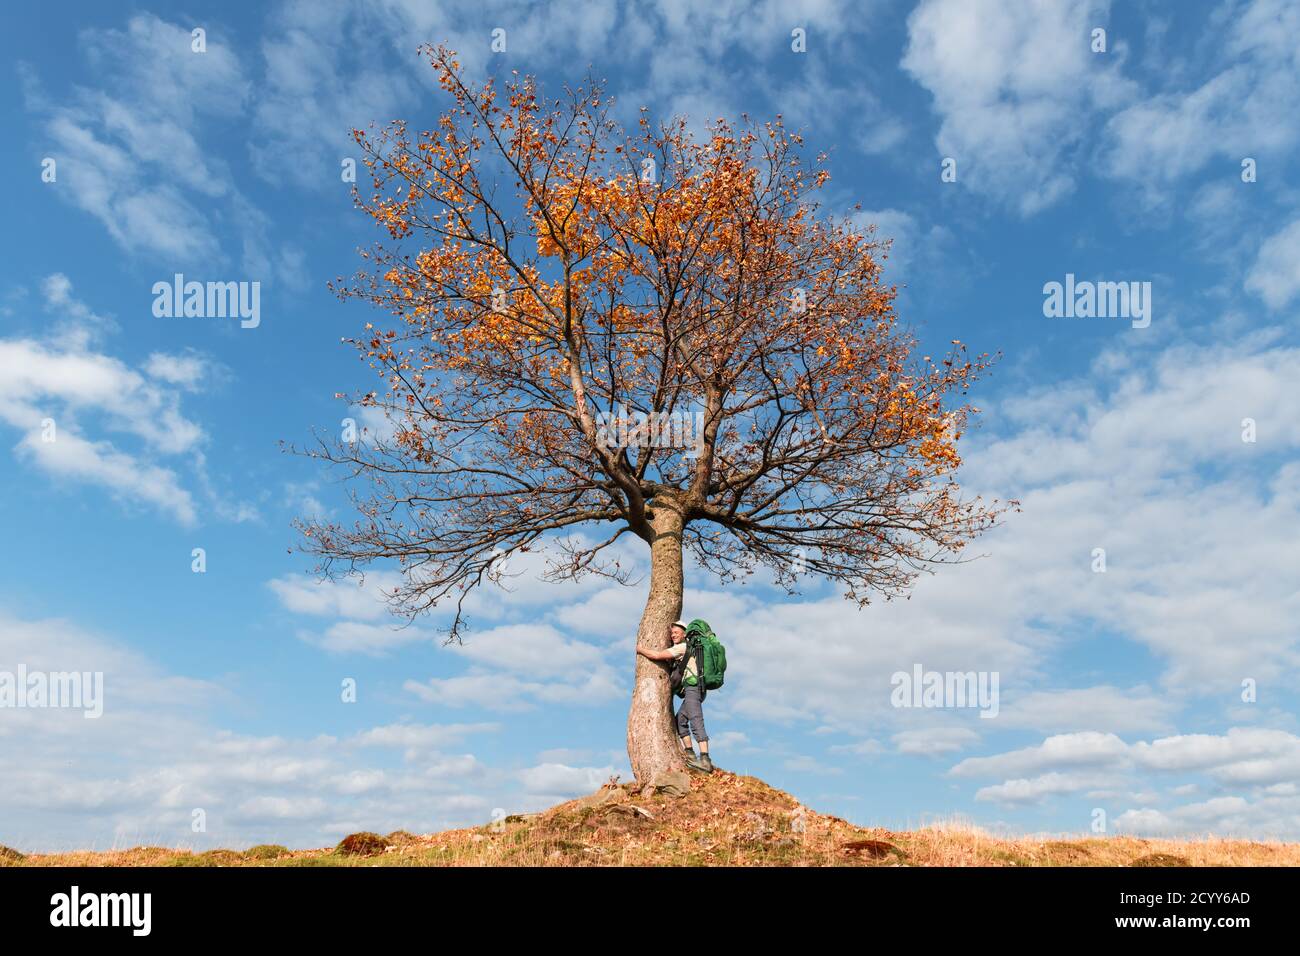 Tourist unter majestätischen Orangenbaum im Herbst Bergtal. Dramatische farbenfrohe Herbstszene mit blau bewölktem Himmel. Landschaftsfotografie Stockfoto